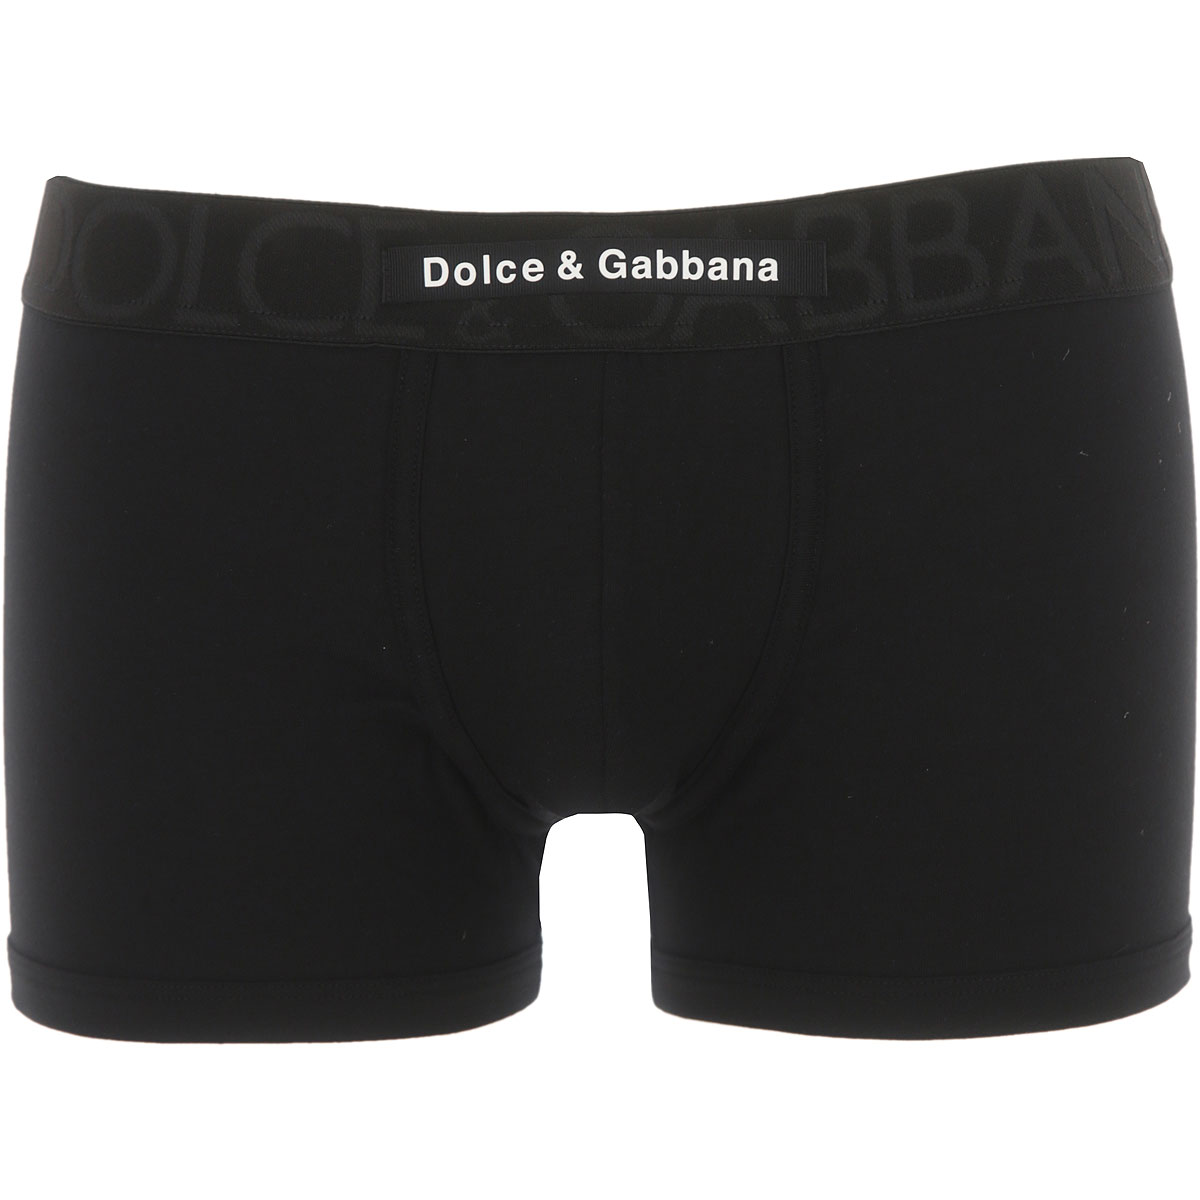 Mens Underwear Dolce & Gabbana, Style code: m4d31j-0ualg-n0000